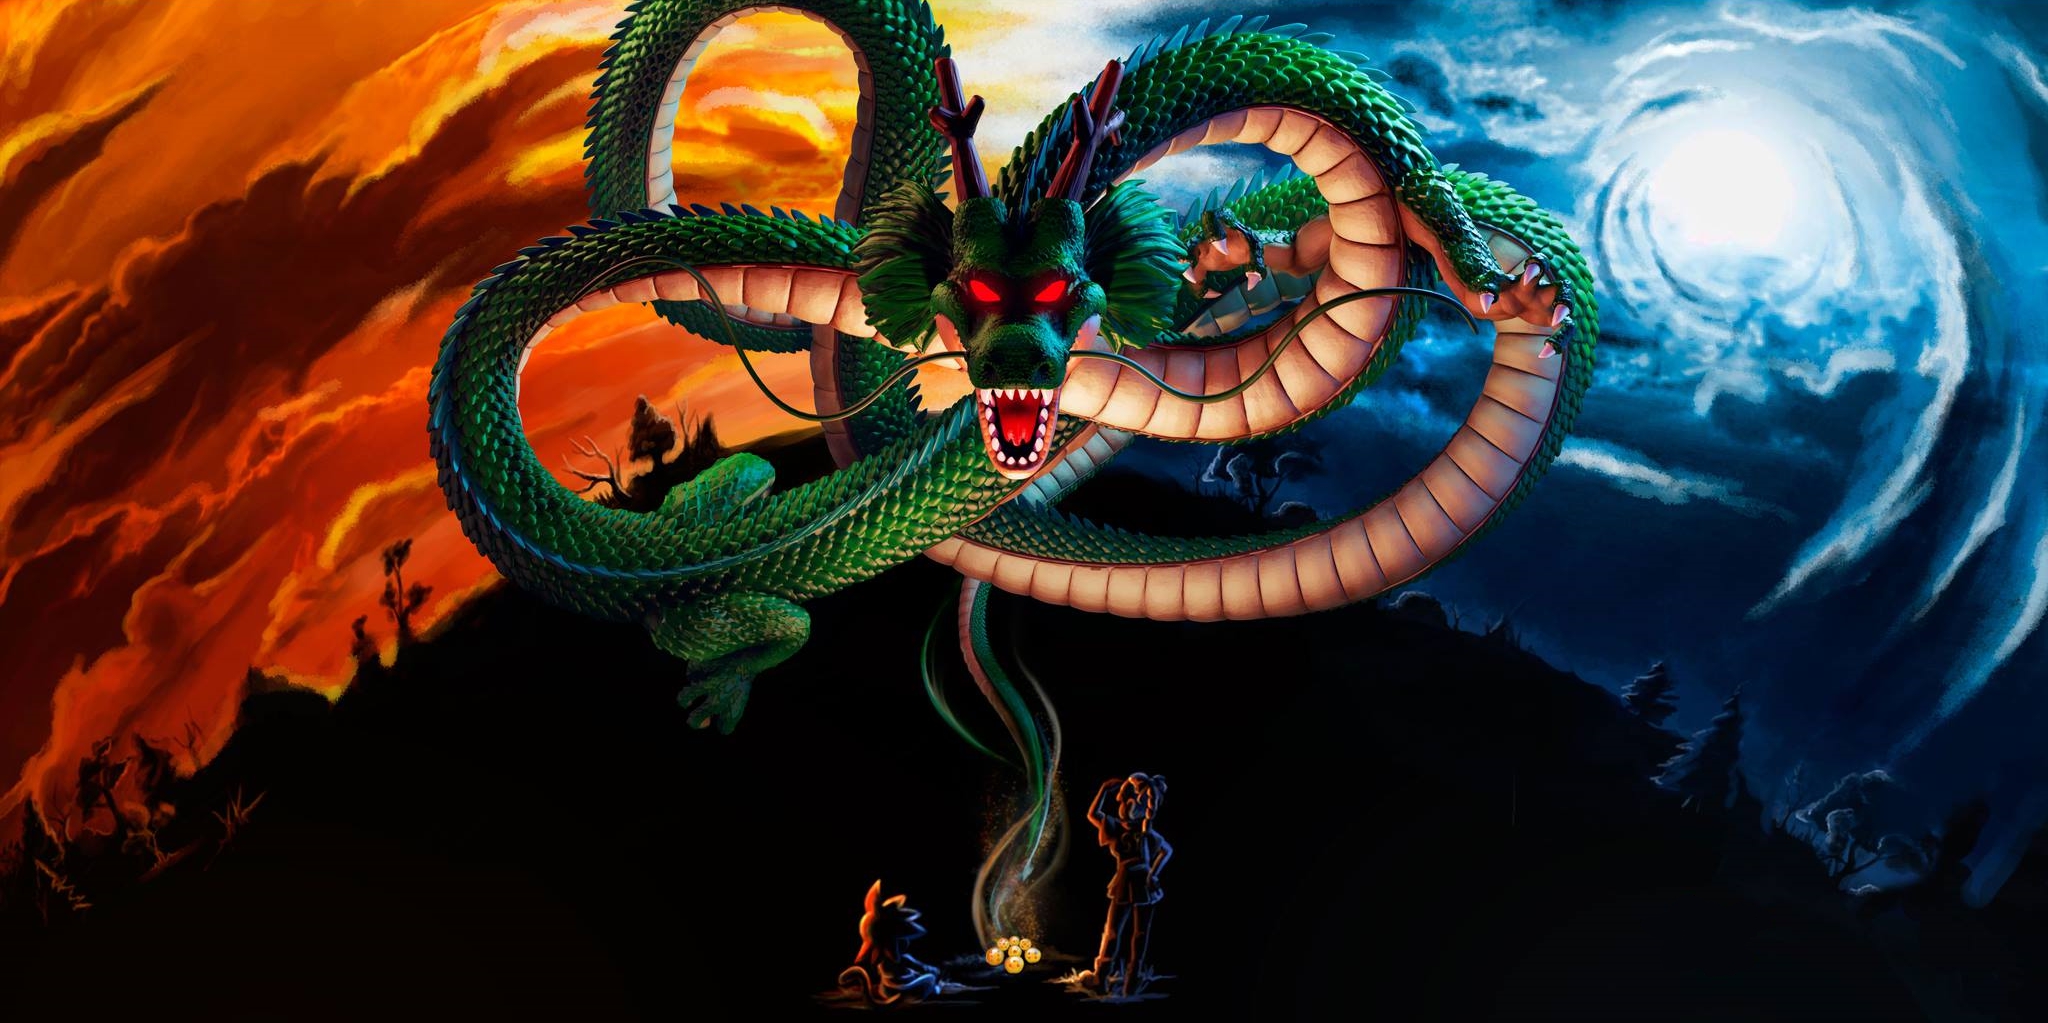 dragon ball super wallpaper,schlange,drachen,erfundener charakter,illustration,cg kunstwerk